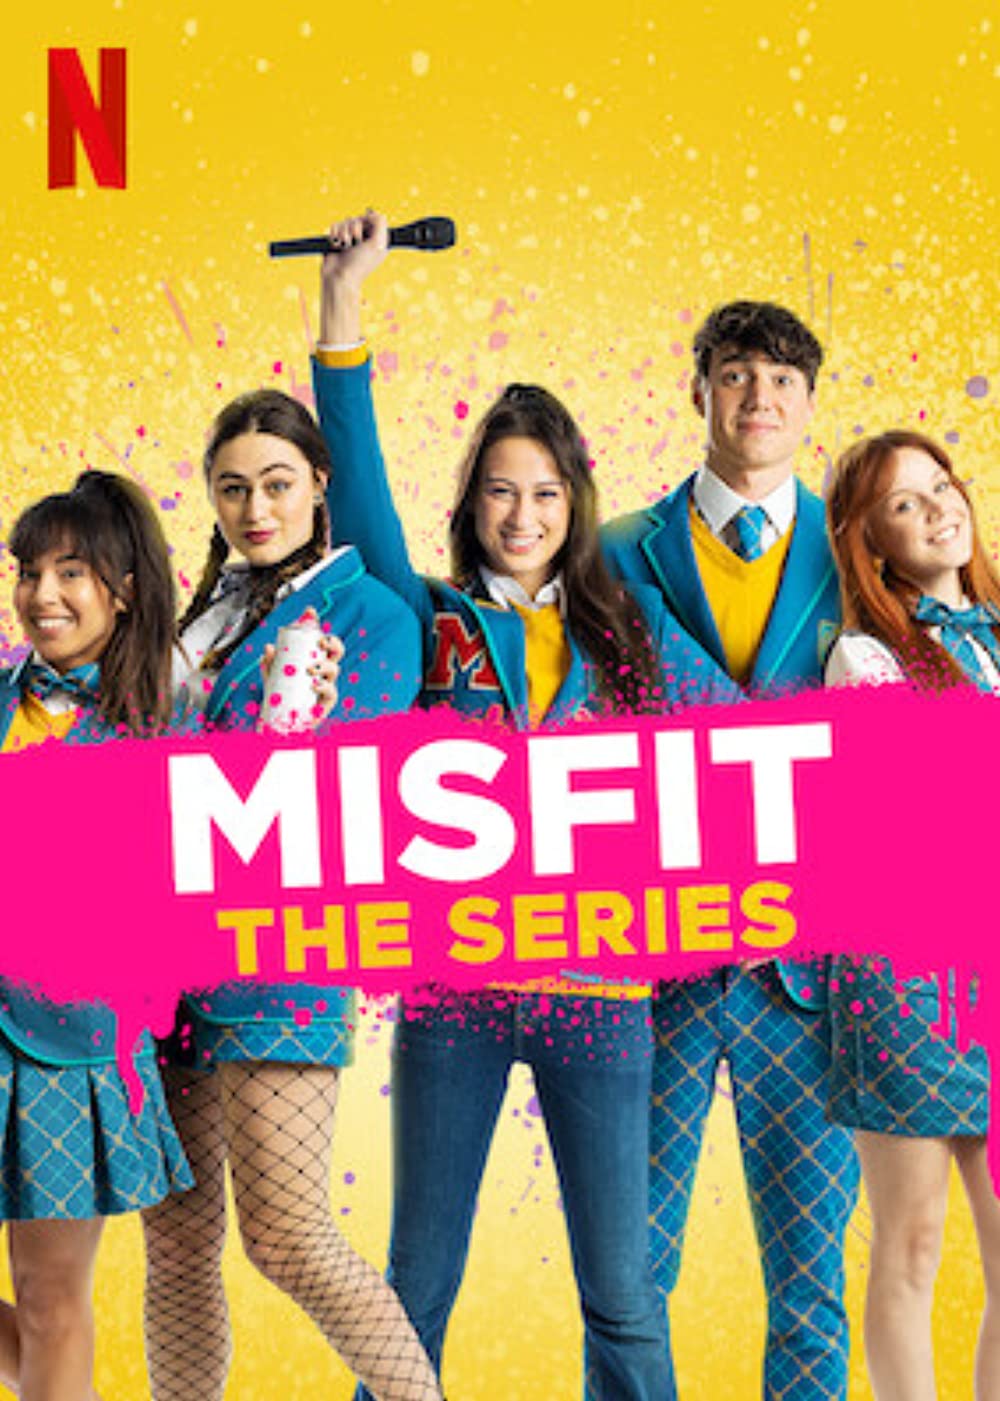 ดูหนังออนไลน์ฟรี MisFit The Series (2021) มิสฟิช เดอะ ซีรี่ย์ ตอนที่ 4